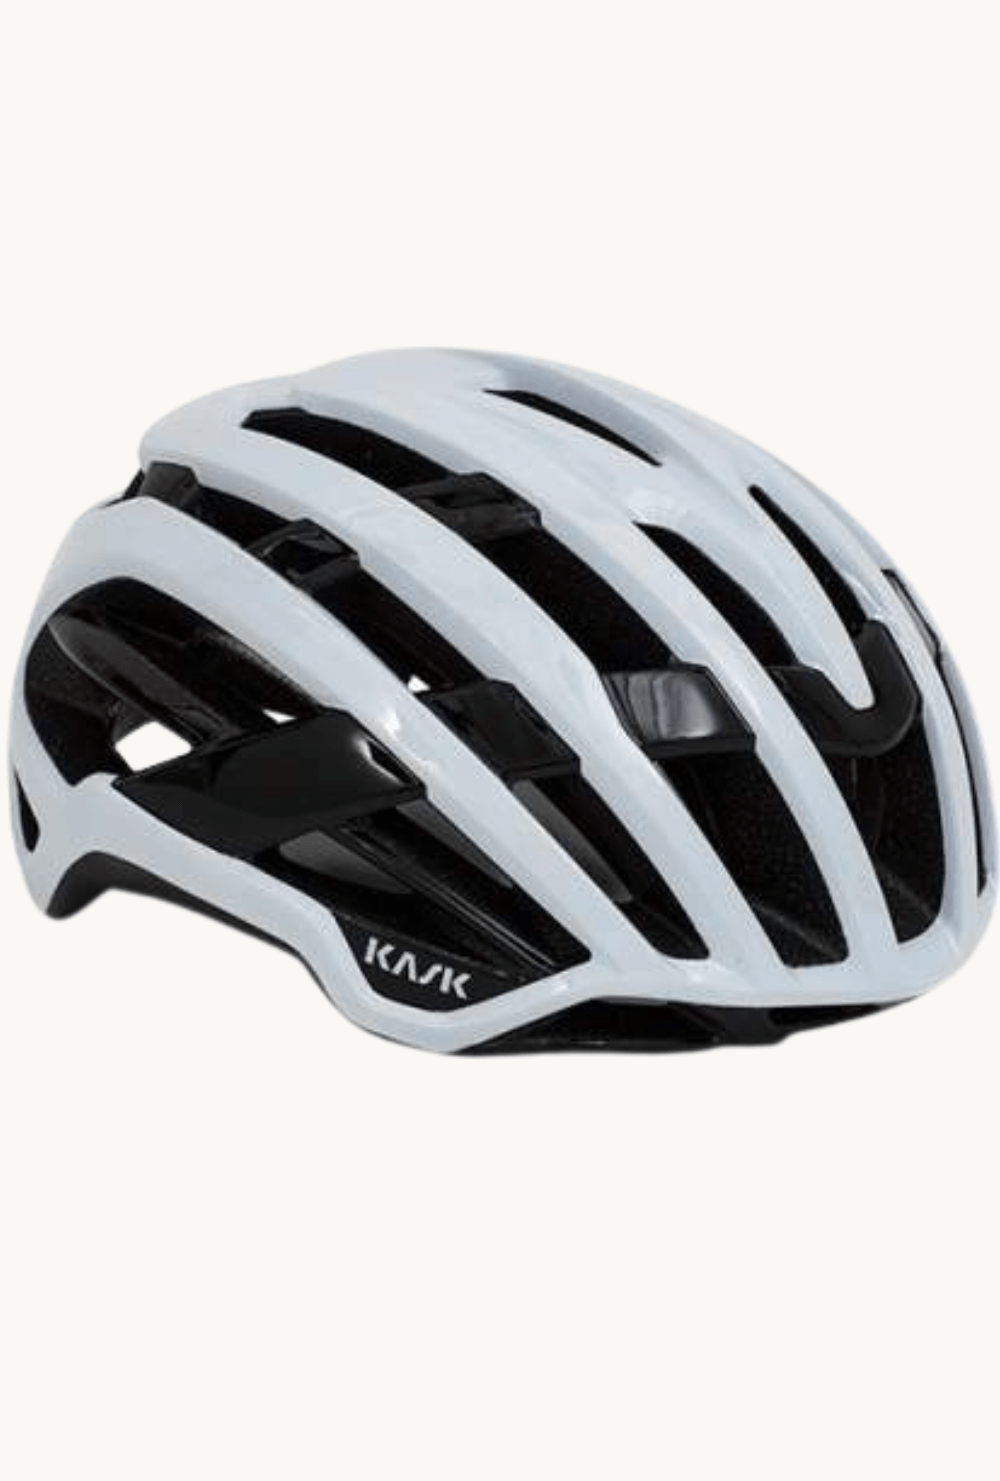 Helmet - Kask Valegro Whitelarge / White